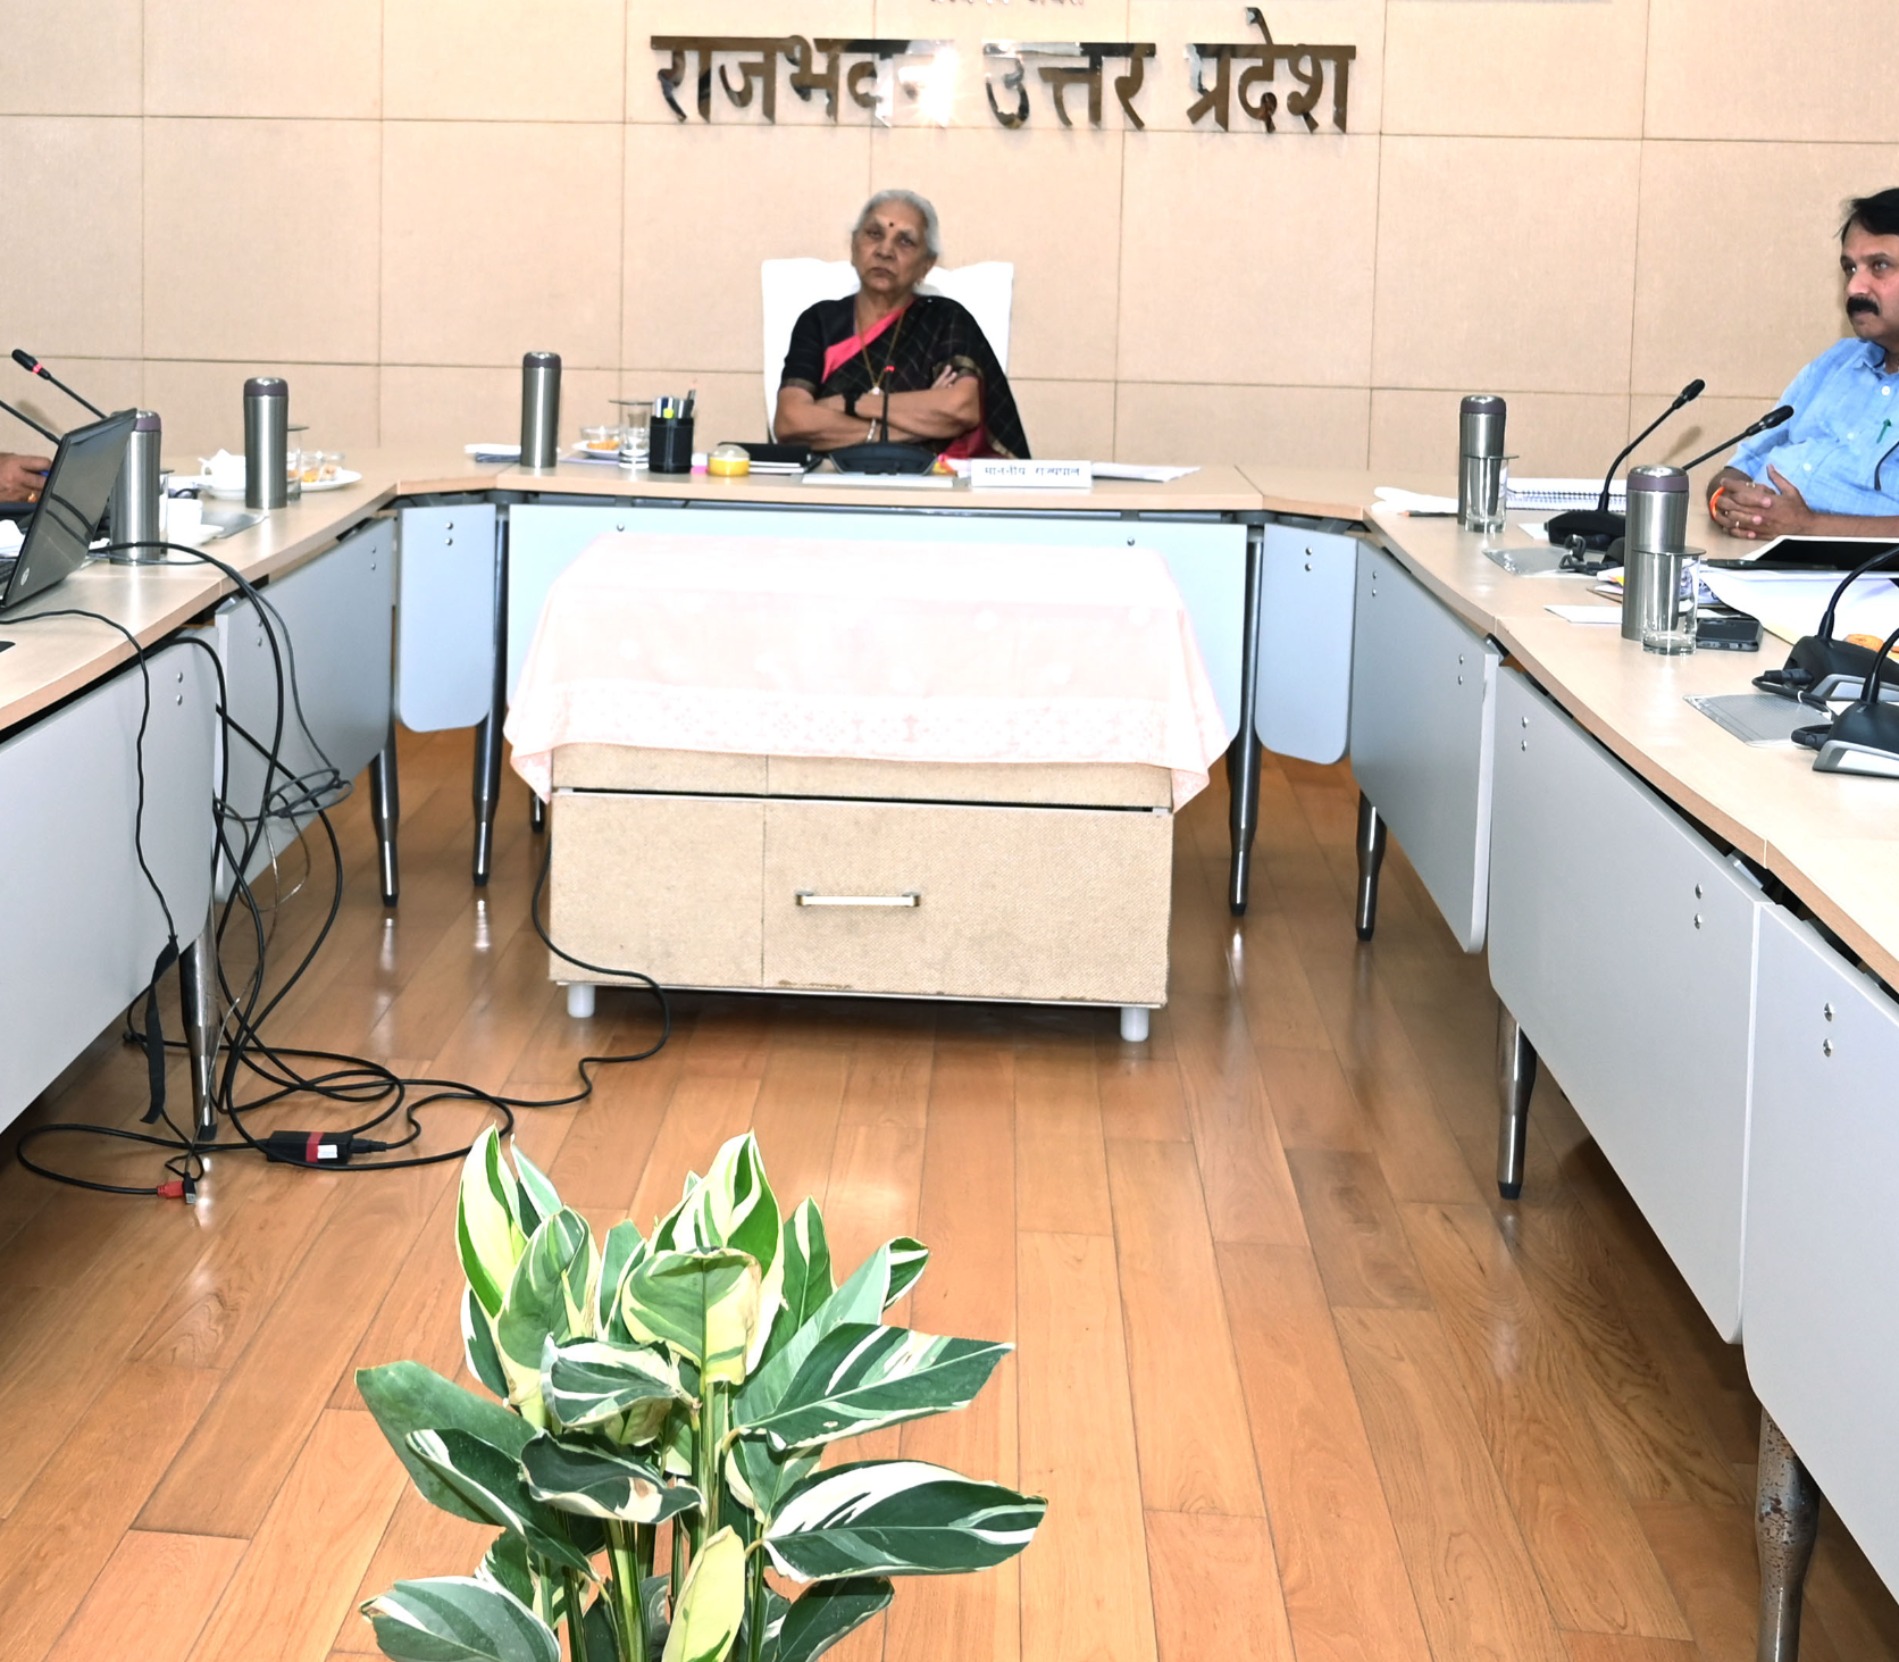 राज्यपाल श्रीमती आनंदीबेन पटेल ने आचार्य नरेन्द देव कृषि एवं प्रौद्योगिक विश्वविद्यालय, अयोध्या के नैक मूल्यांकन के प्रस्तुतिकरण की समीक्षा की